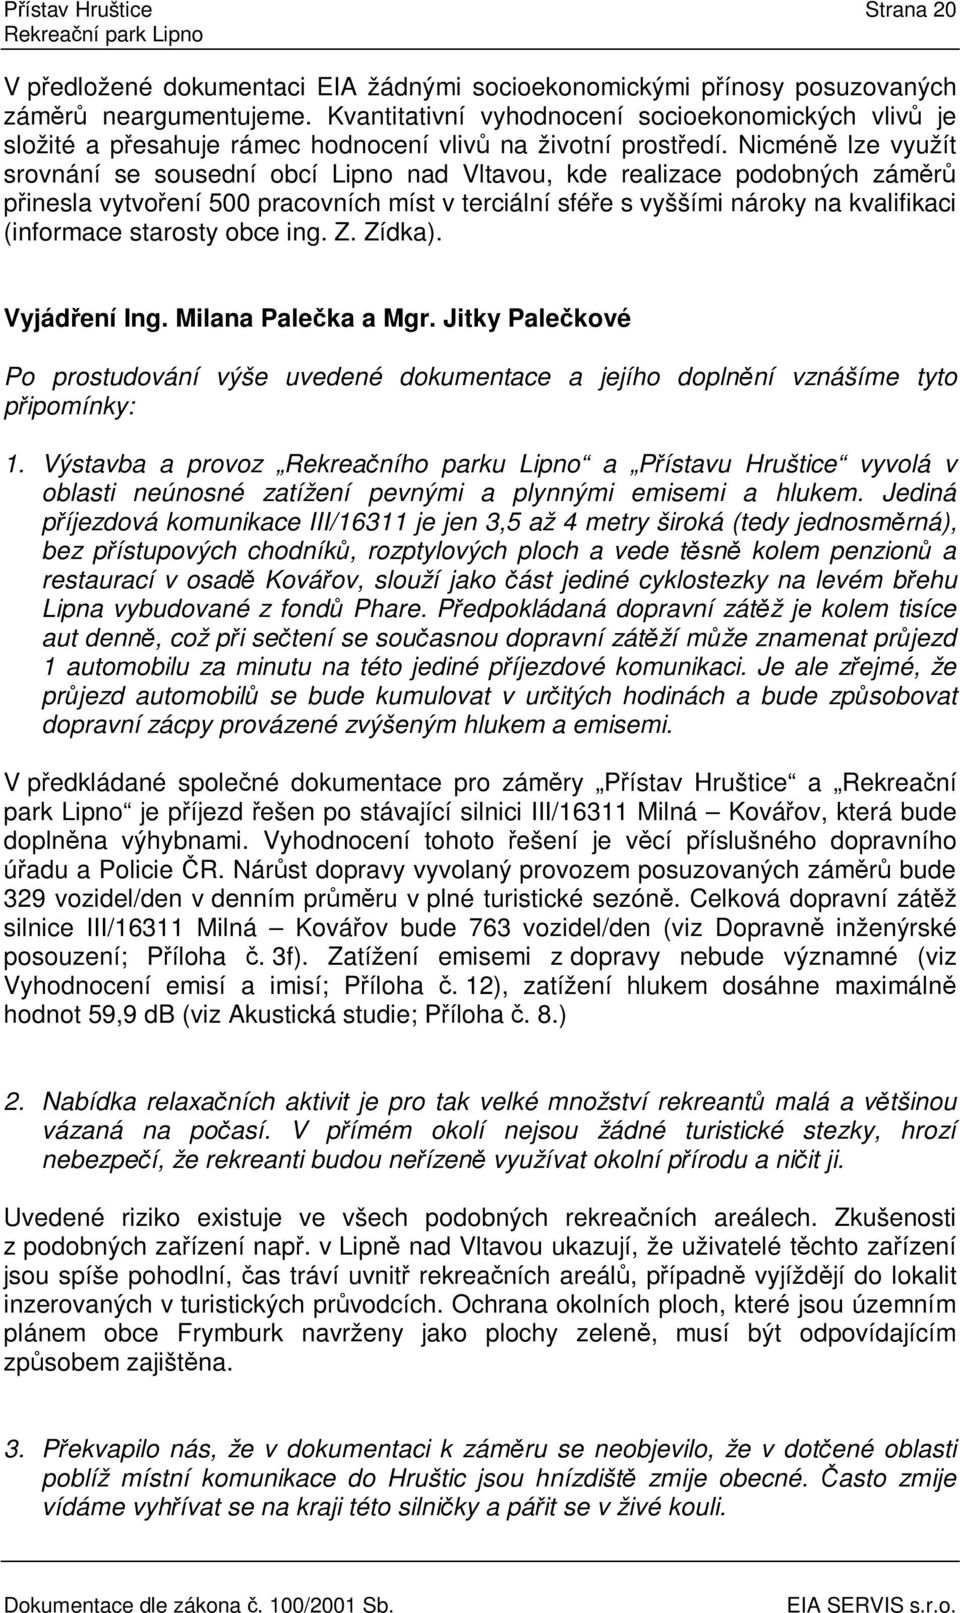 Nicmén lze využít srovnání se sousední obcí Lipno nad Vltavou, kde realizace podobných zámr pinesla vytvoení 500 pracovních míst v terciální sfée s vyššími nároky na kvalifikaci (informace starosty